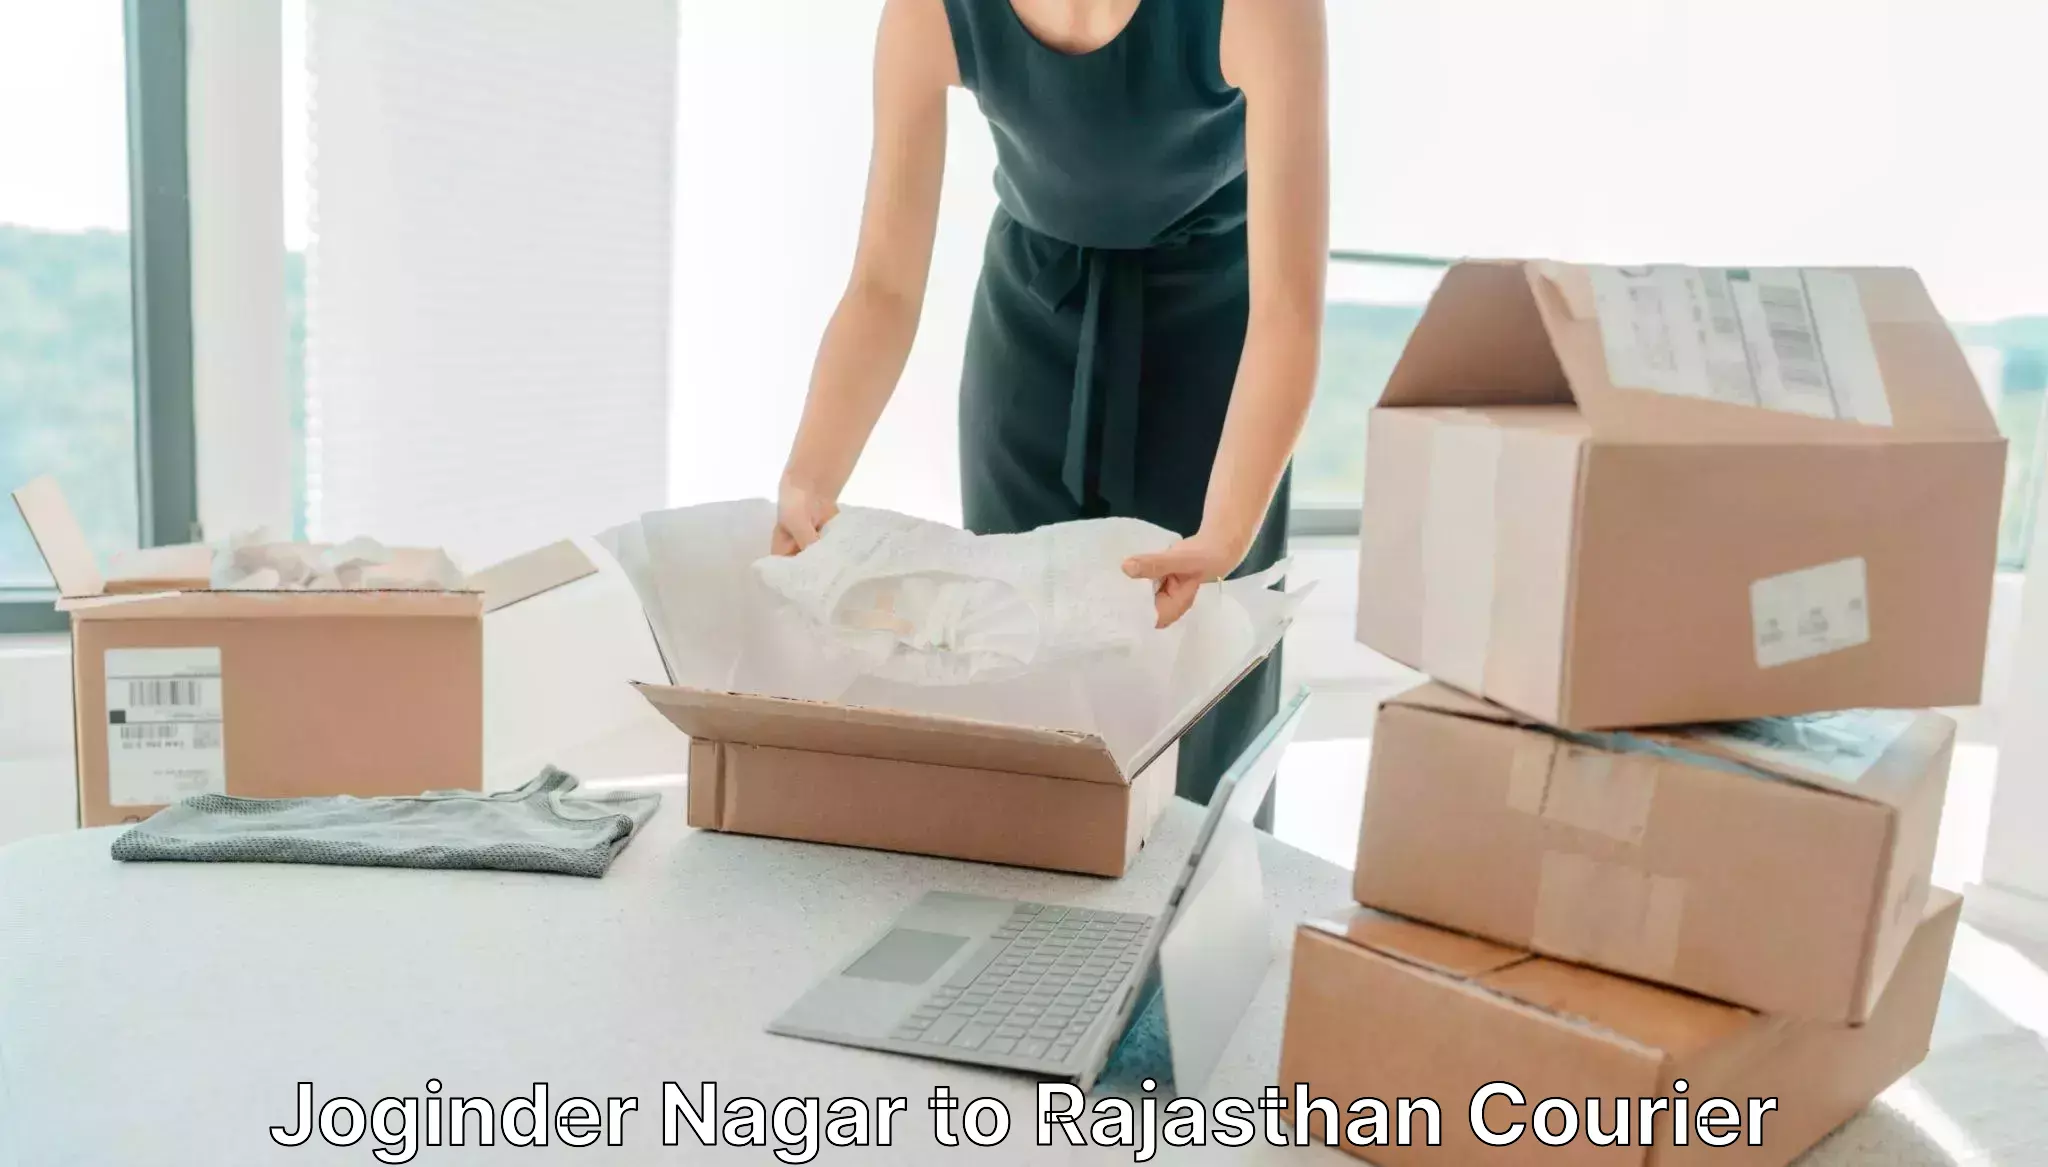 Efficient parcel tracking Joginder Nagar to Nainwa